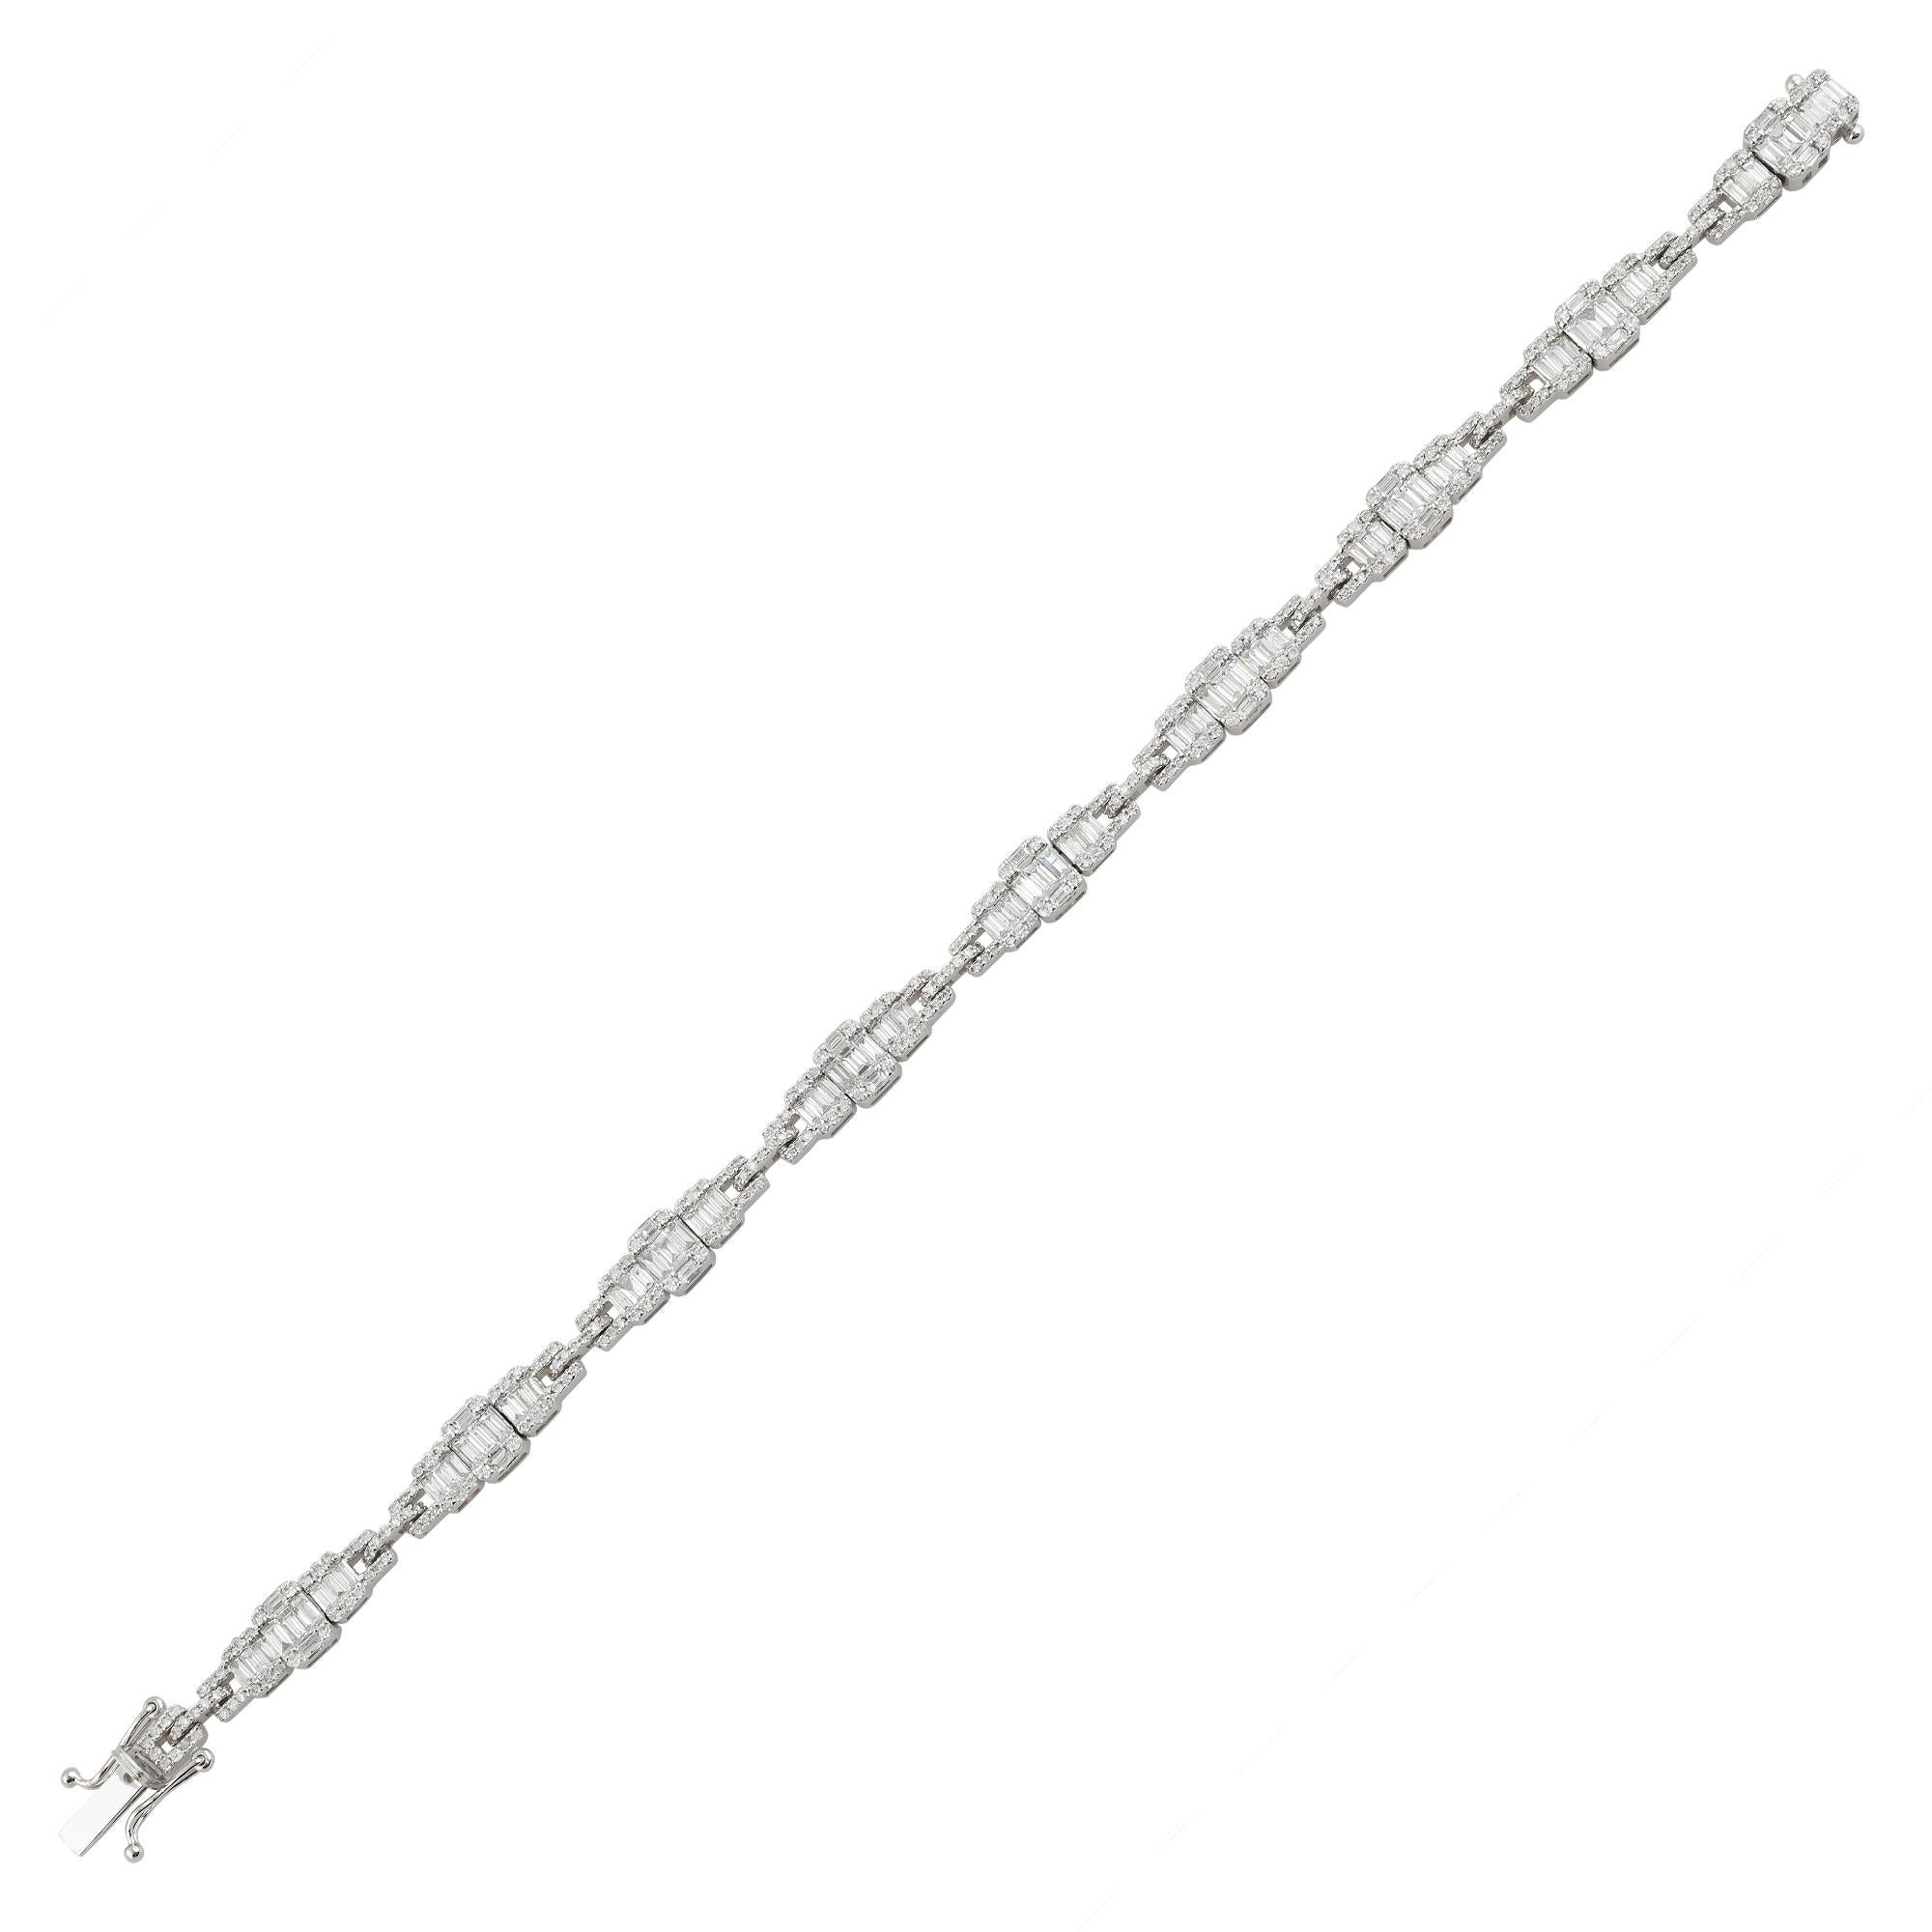 Taille baguette Bracelet à breloques en or blanc 18 carats avec diamants baguettes et ronds, fabrication artisanale en vente